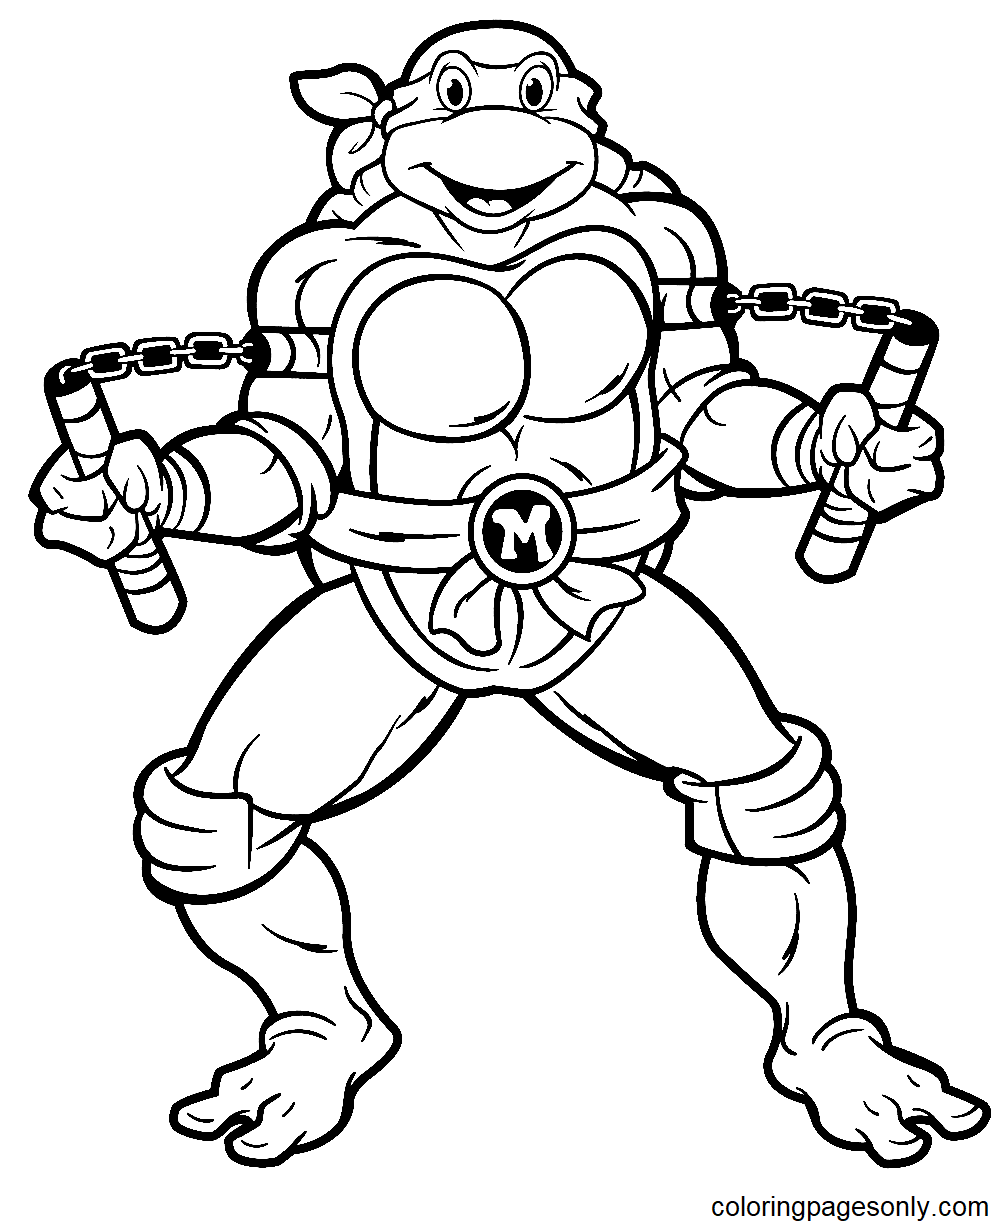 忍者神龟 米开朗基罗 出自《忍者神龟》